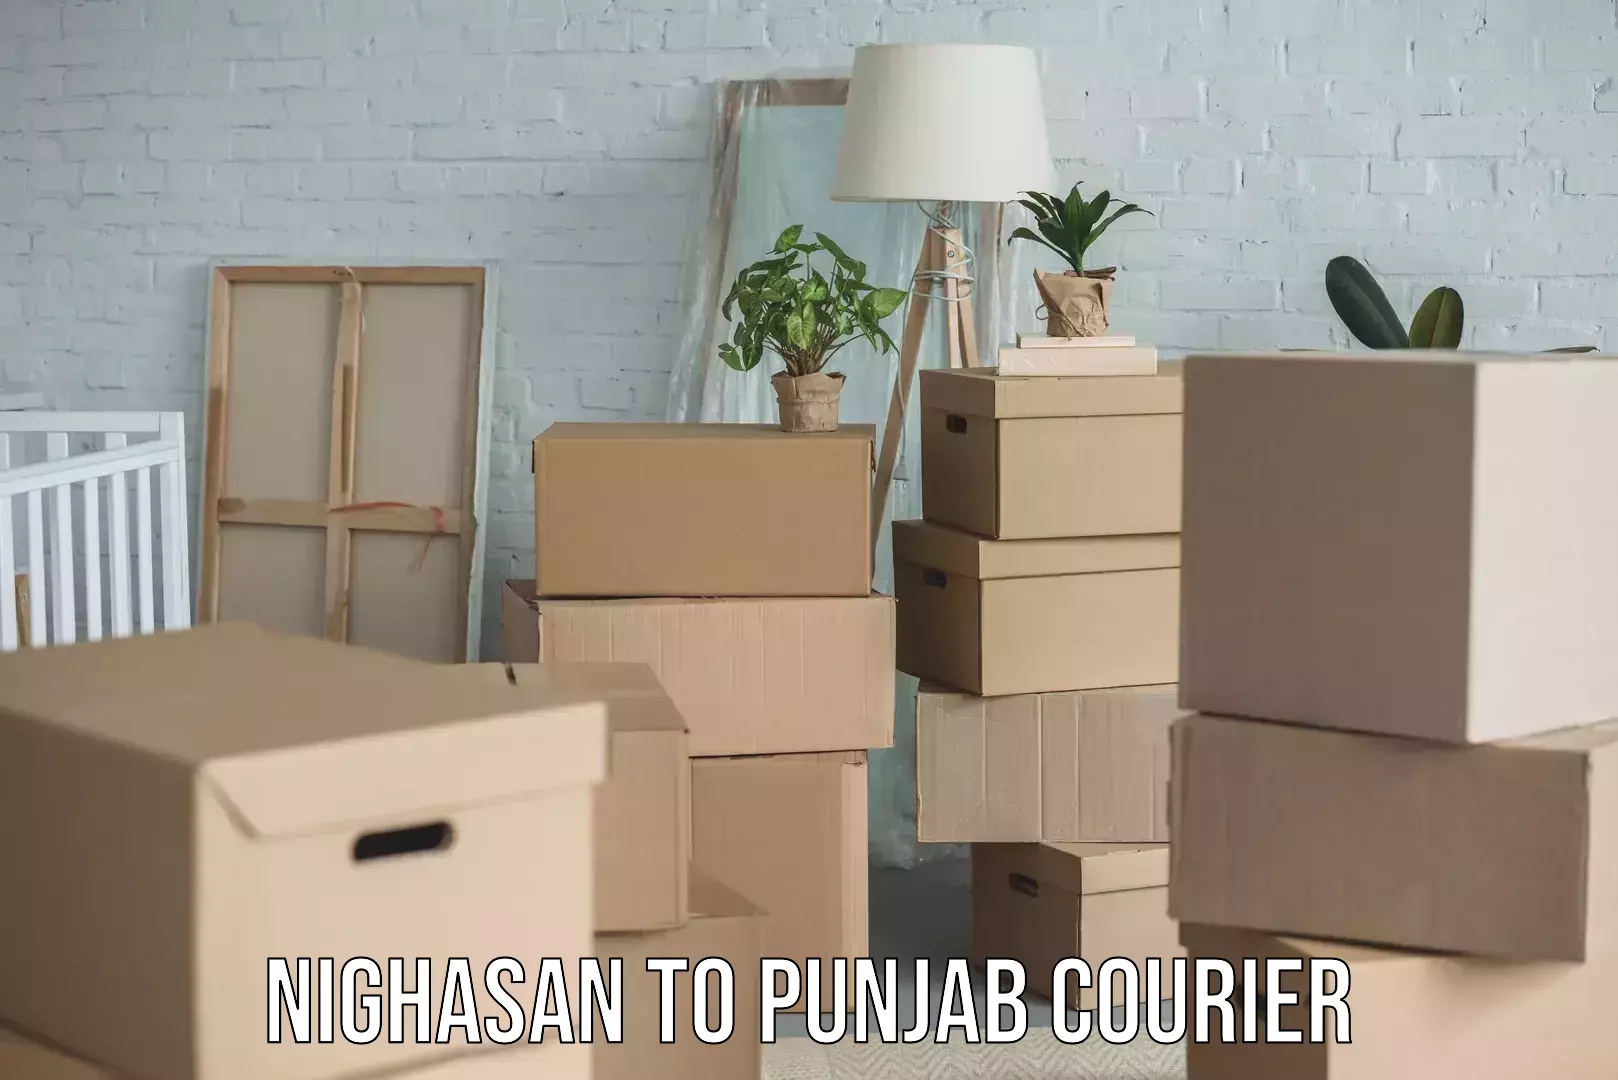 Furniture delivery service Nighasan to Punjab